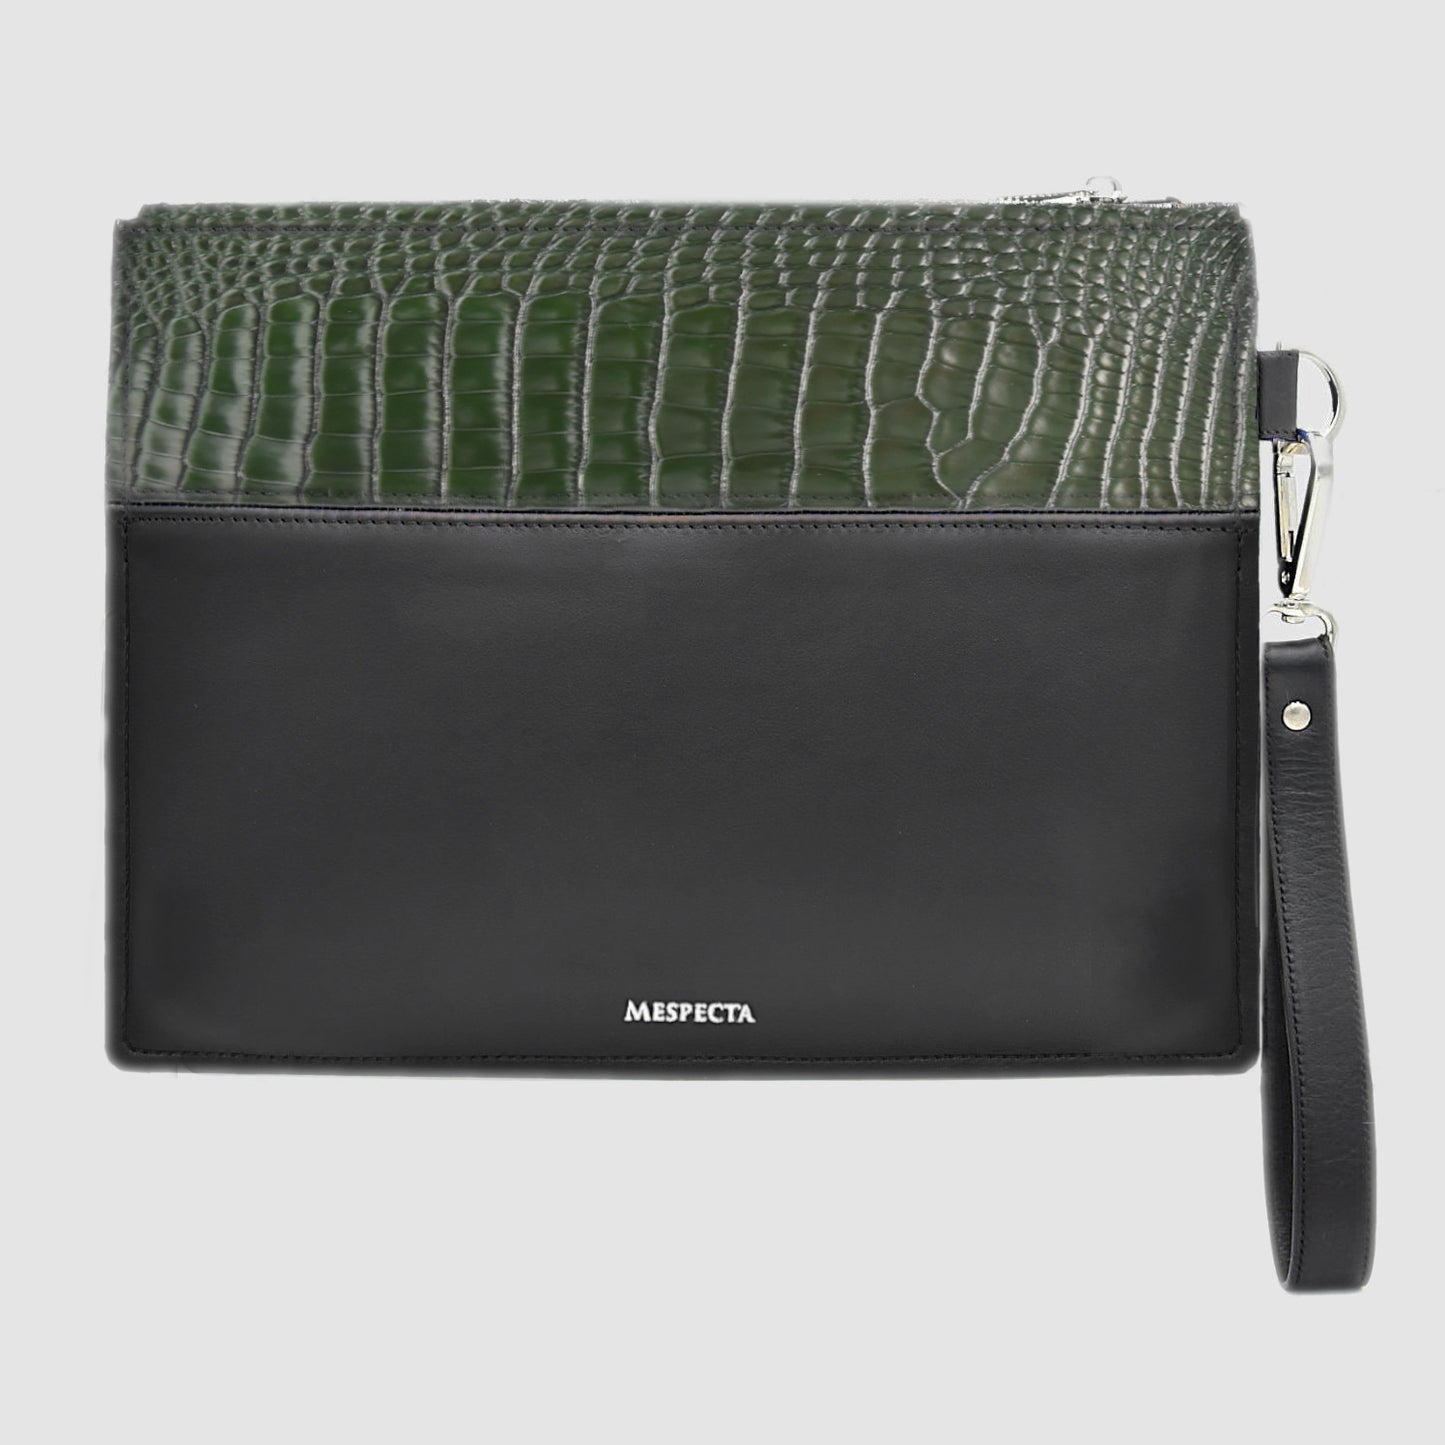 Pochette Clutch borsello Uomo in vera pelle di Alligatore - Personalizzabile con iniziali - Verde Bosco